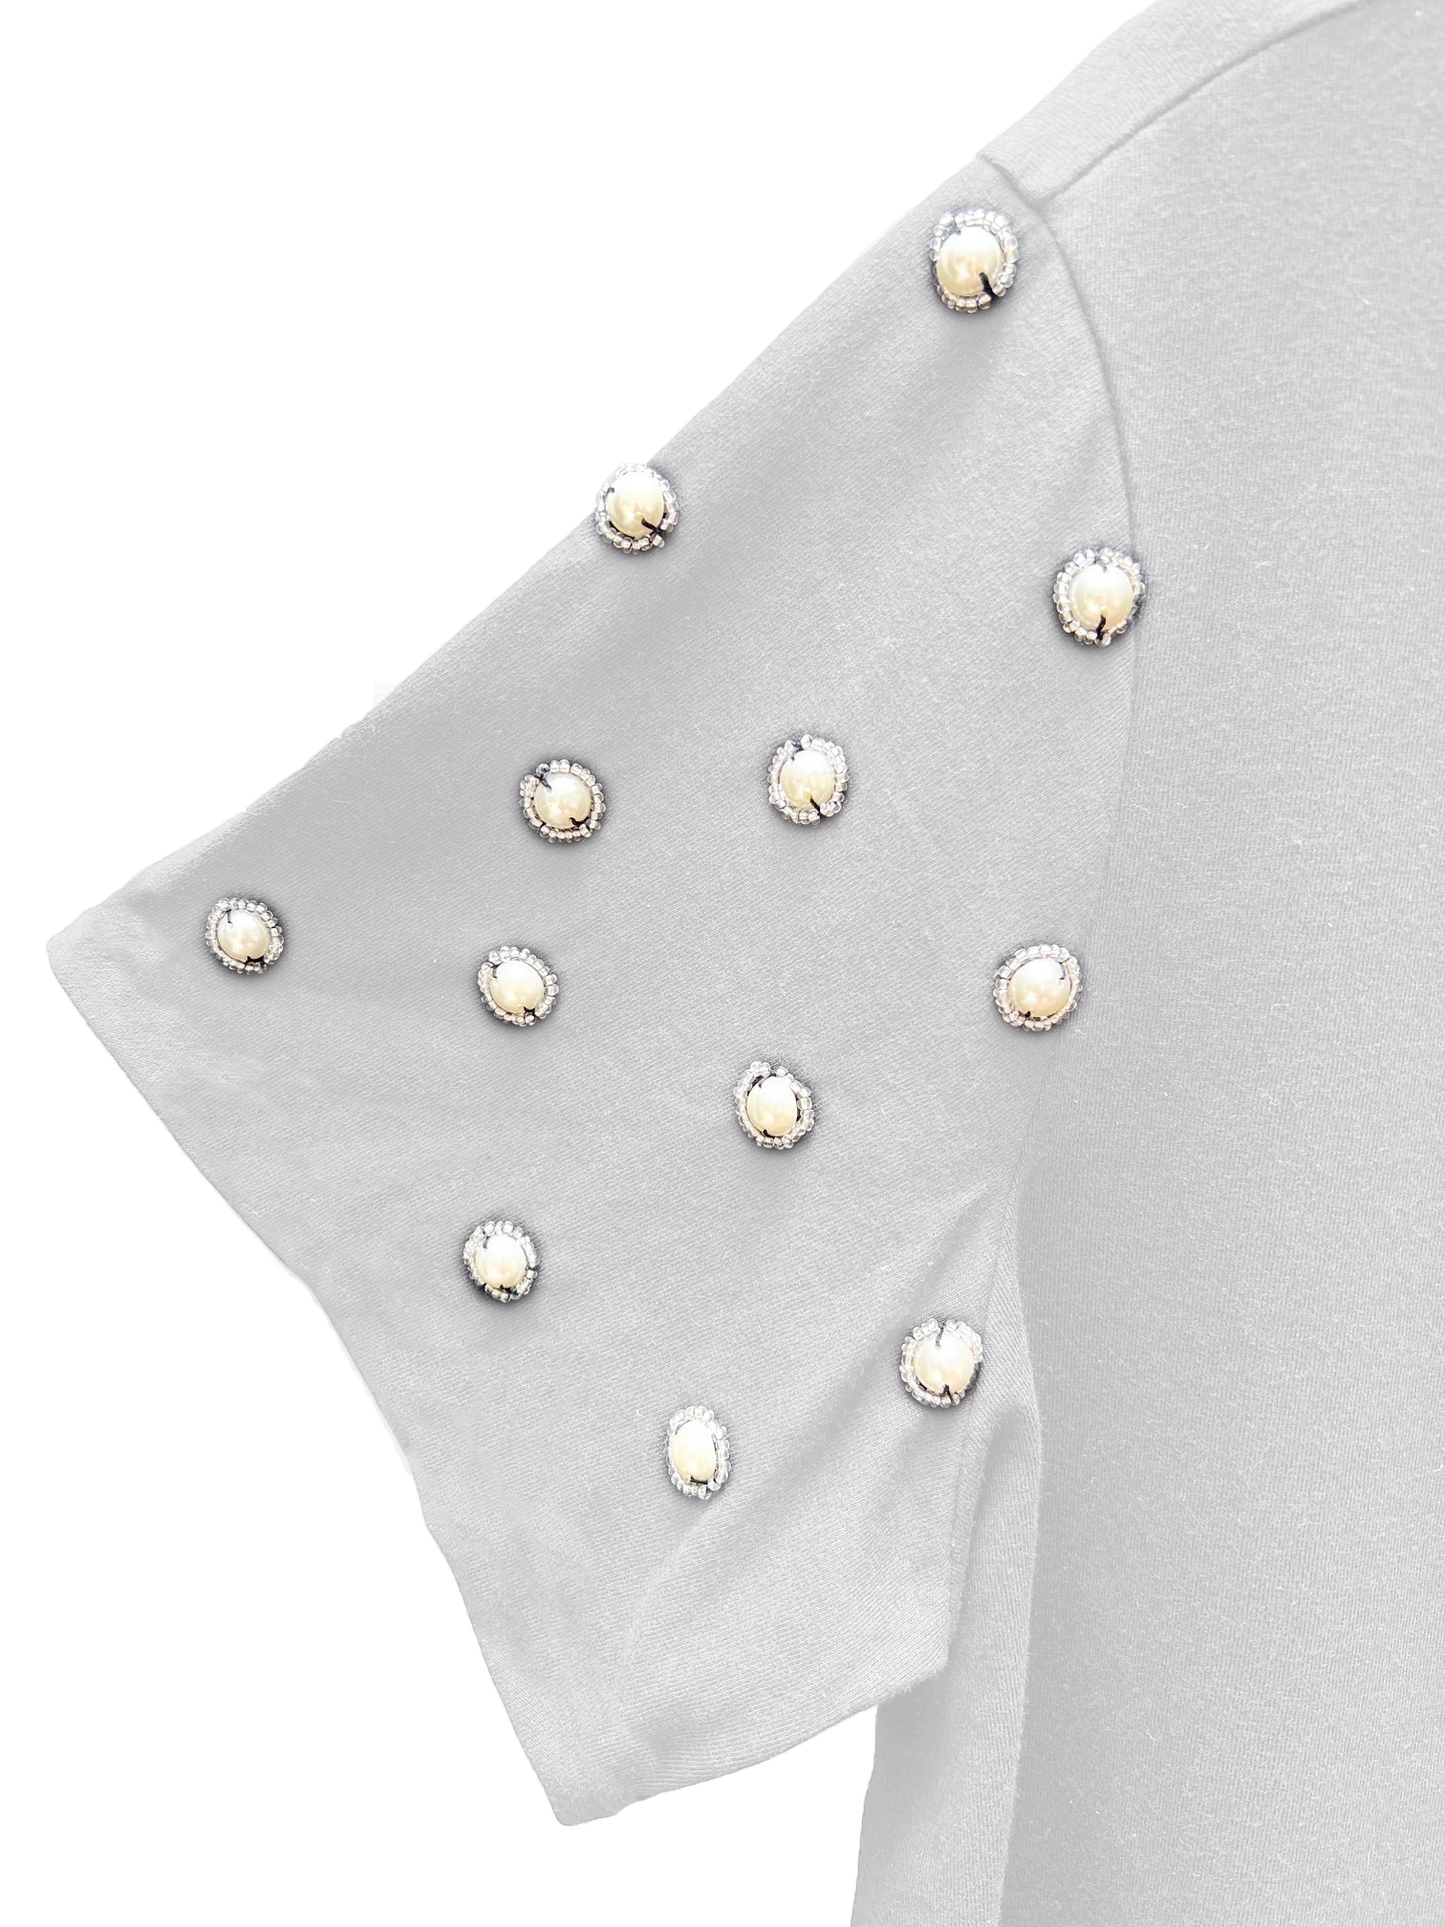 T-Shirt Pearl Shine Bordada à Mão: Elegância Exclusiva para Mulheres Poderosas [Ponto de Luz®]